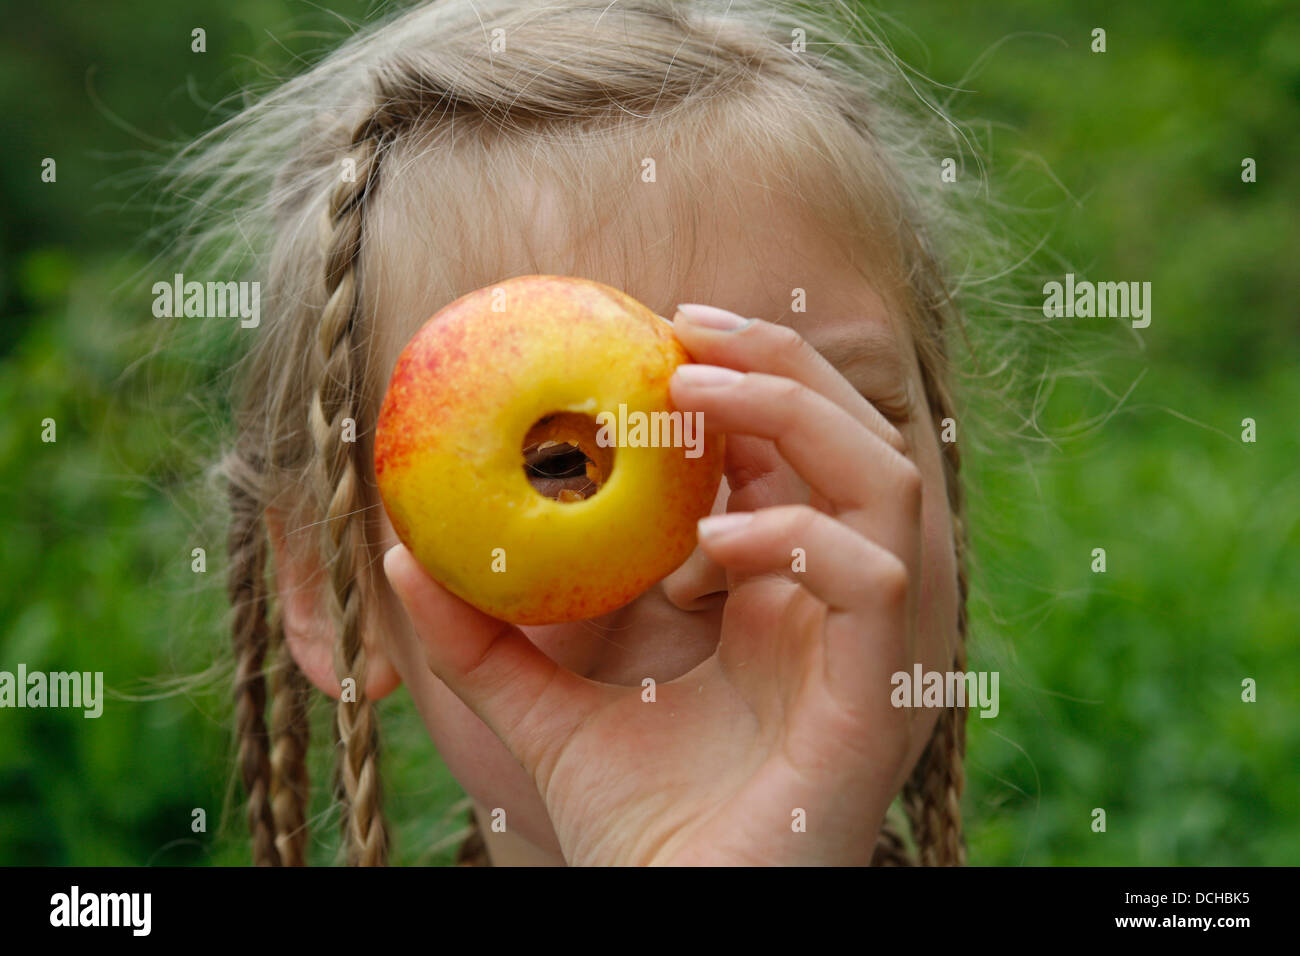 Niña, Niño con Apple, manzanas, Mädchen, tipo mit Apfel, Äpfel, Obst Foto de stock